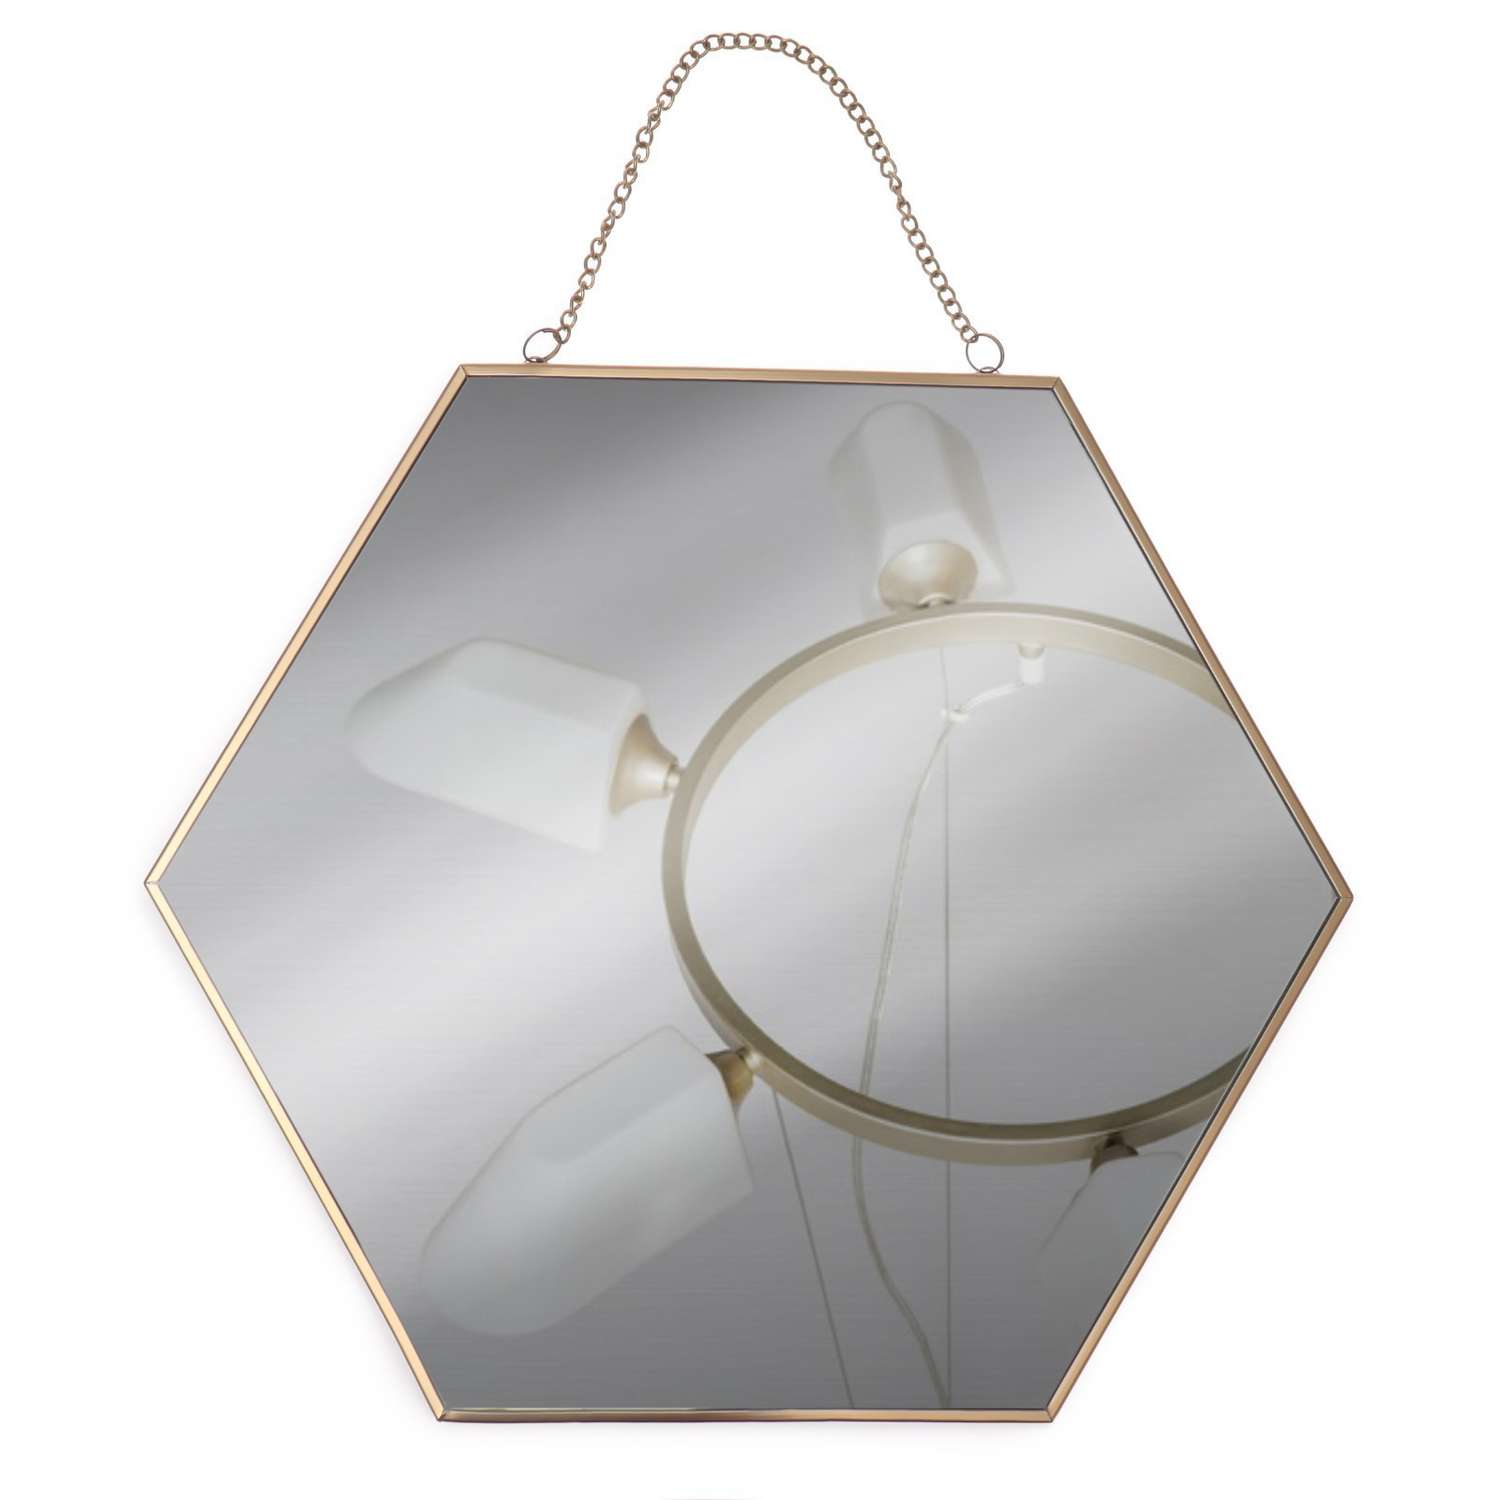 Зеркало Queen fair настенное «Изящная геометрия» зеркальная поверхность 25 × 28 см цвет золотистый - фото 2